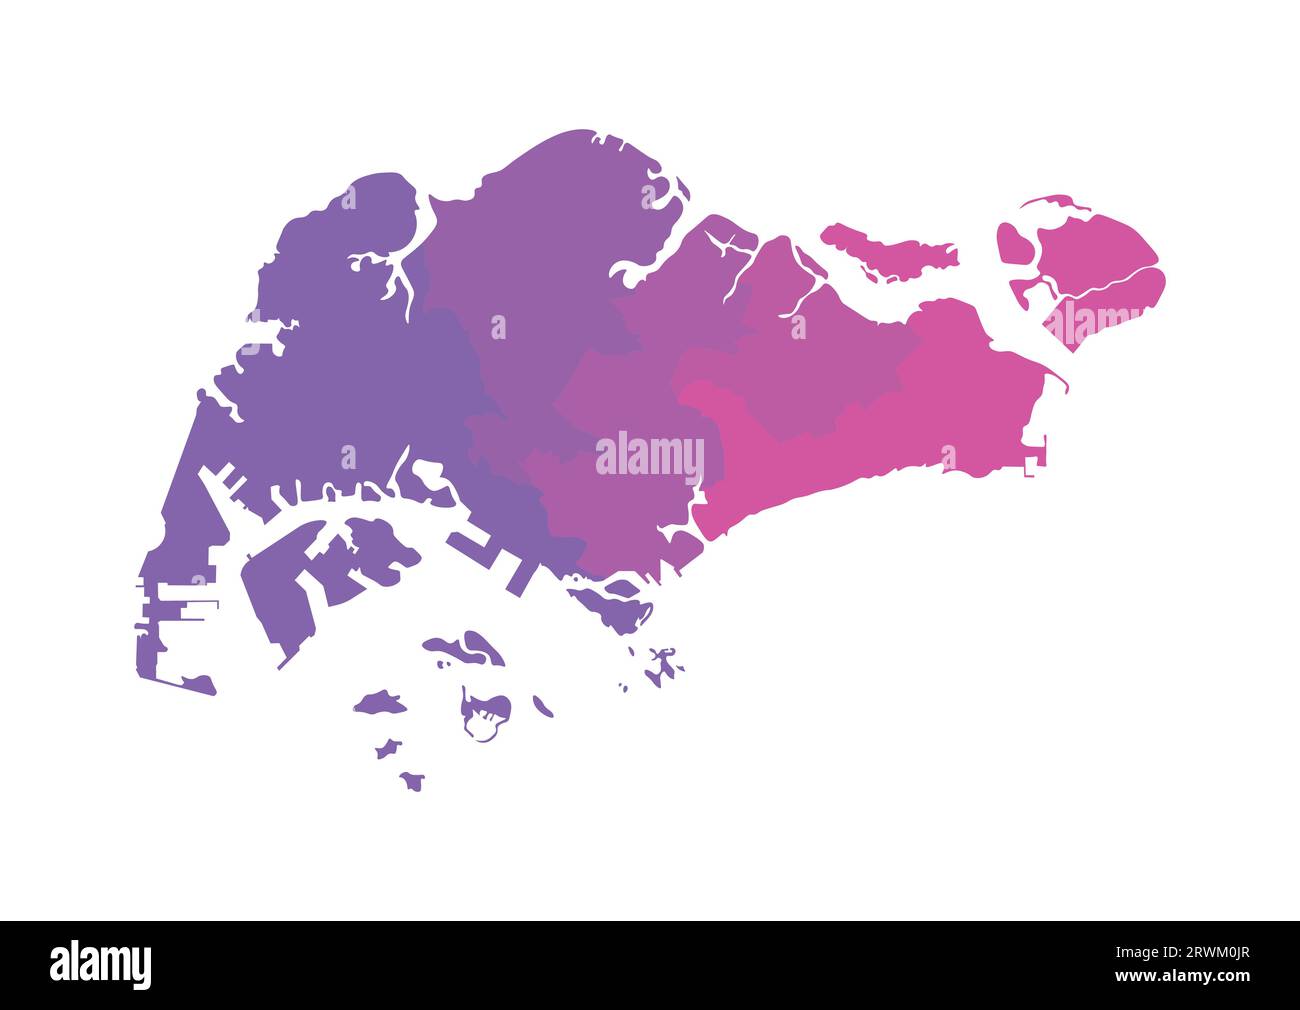 Vektor-isolierte Illustration einer vereinfachten Verwaltungskarte Singapurs. Grenzen der Regionen. Mehrfarbige Silhouetten. Stock Vektor